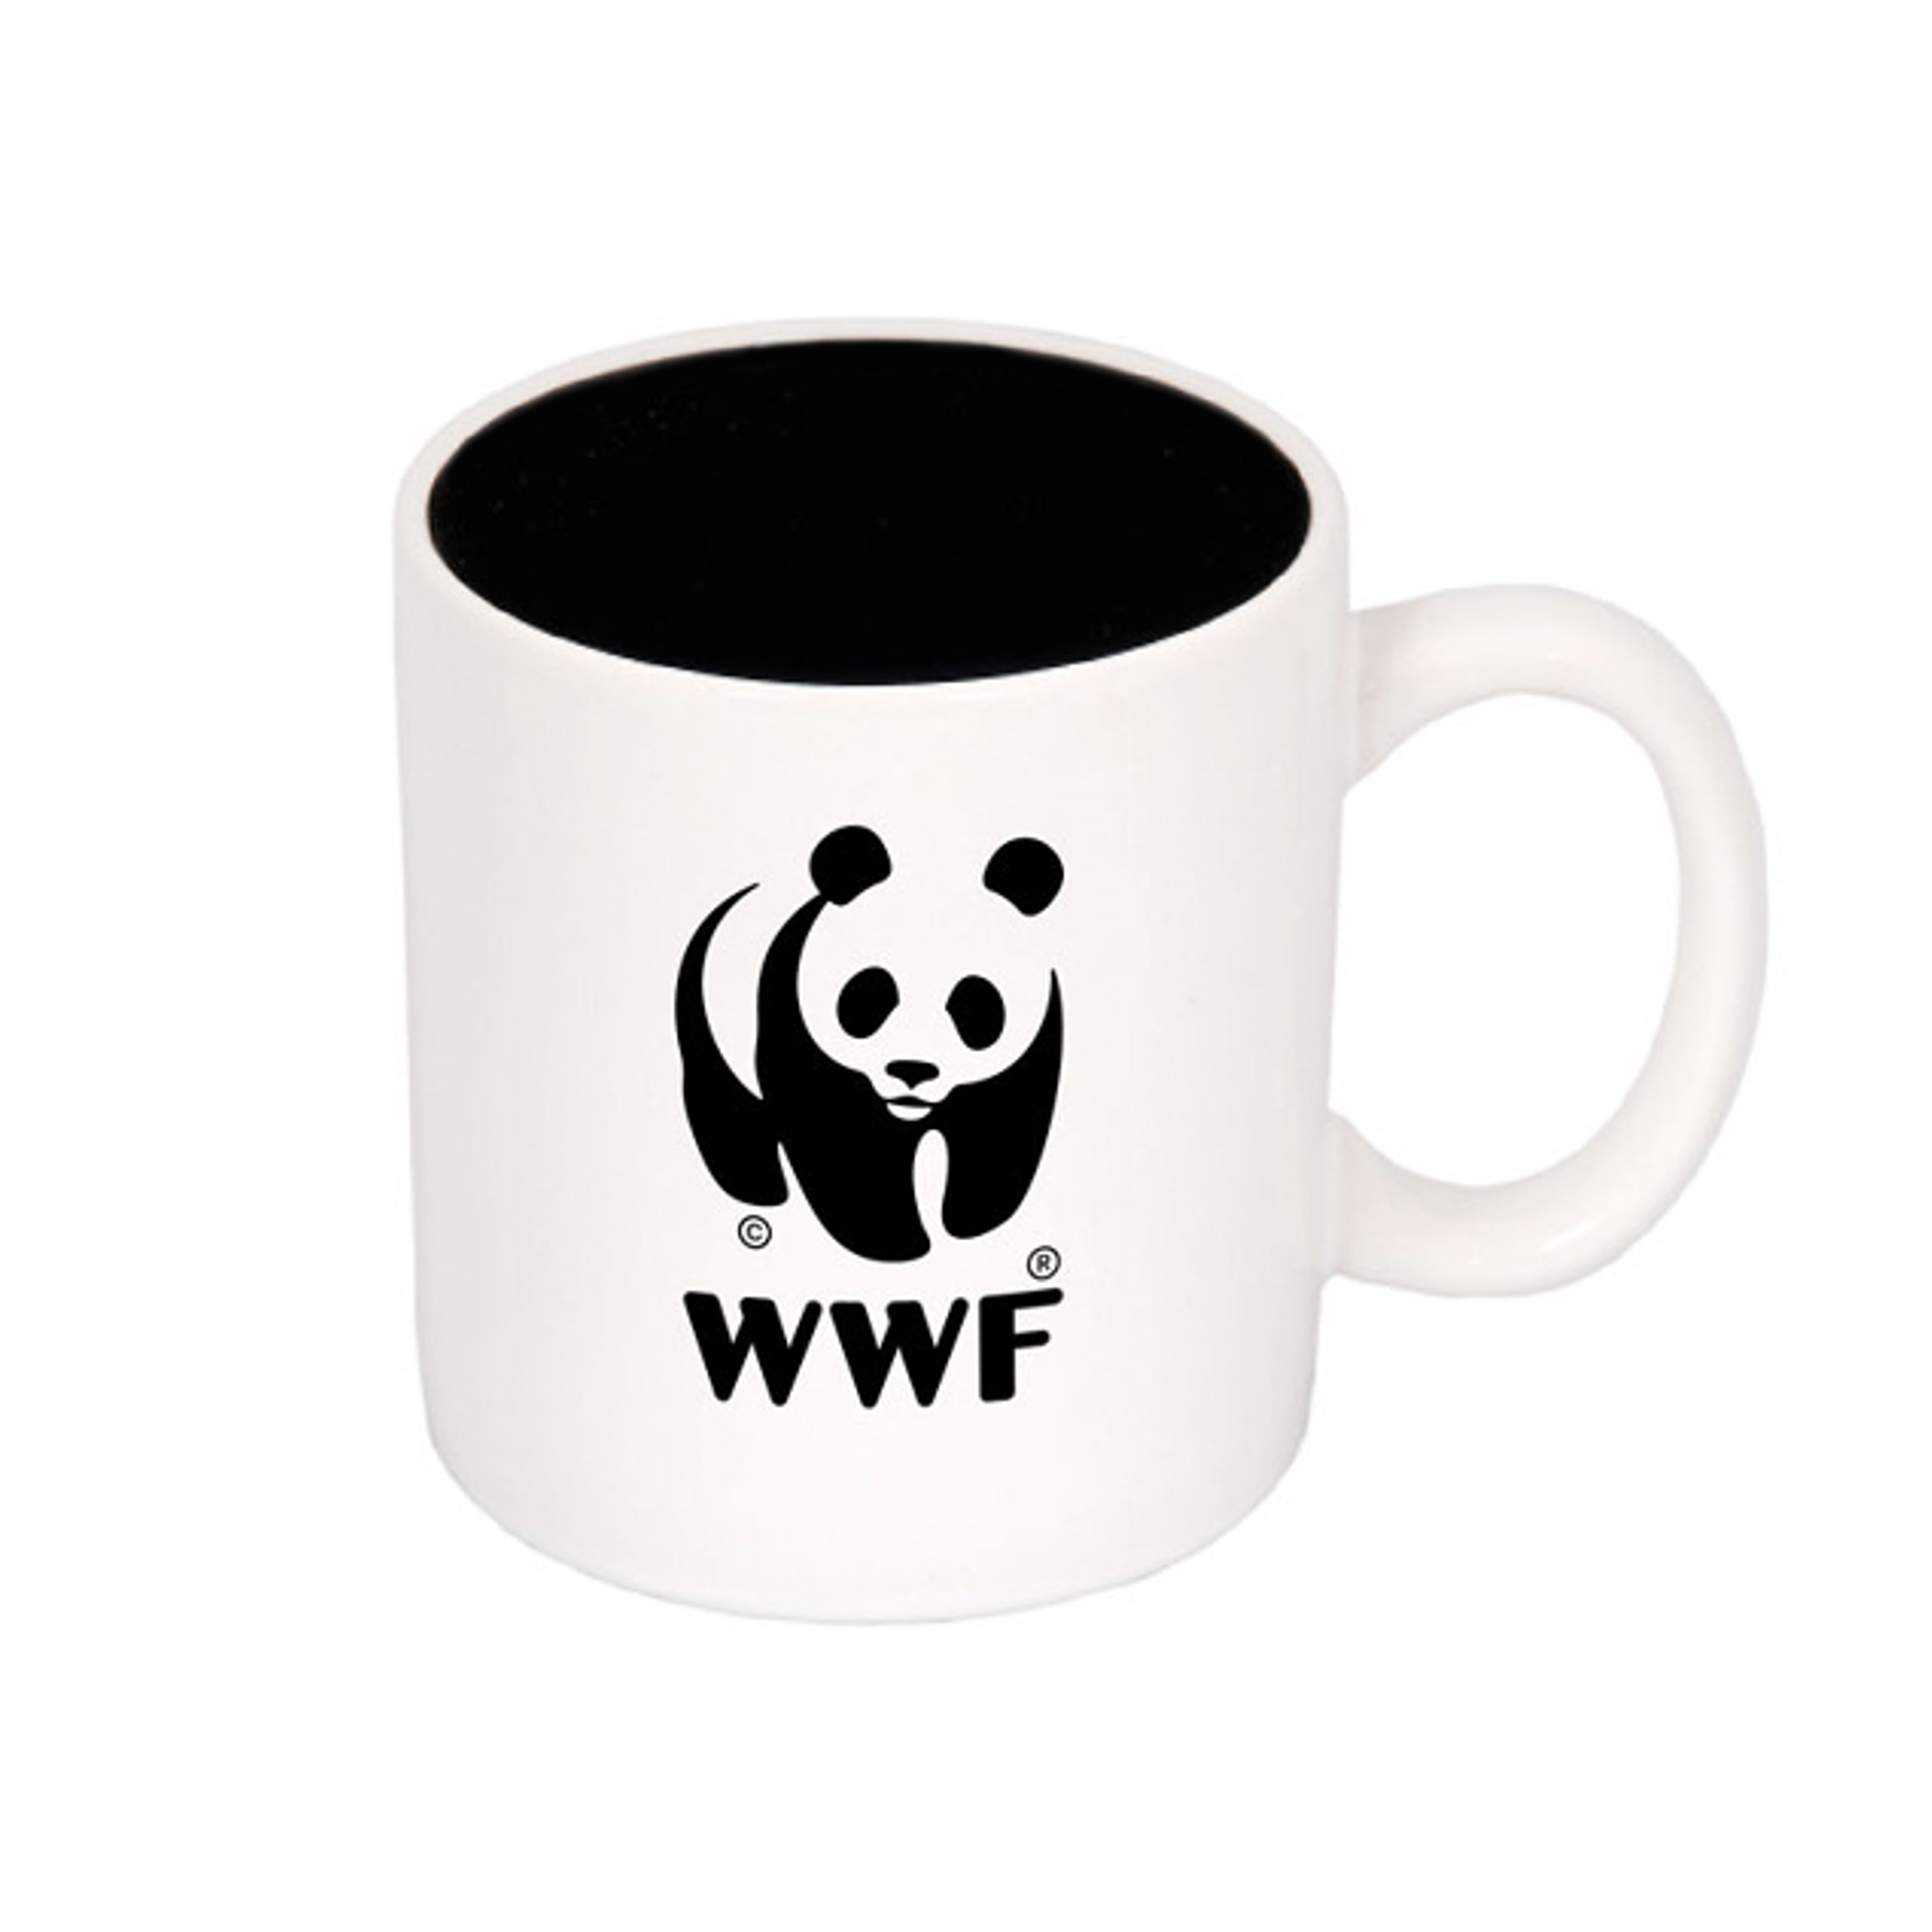 WWF ceramic mug - WWF-Canada